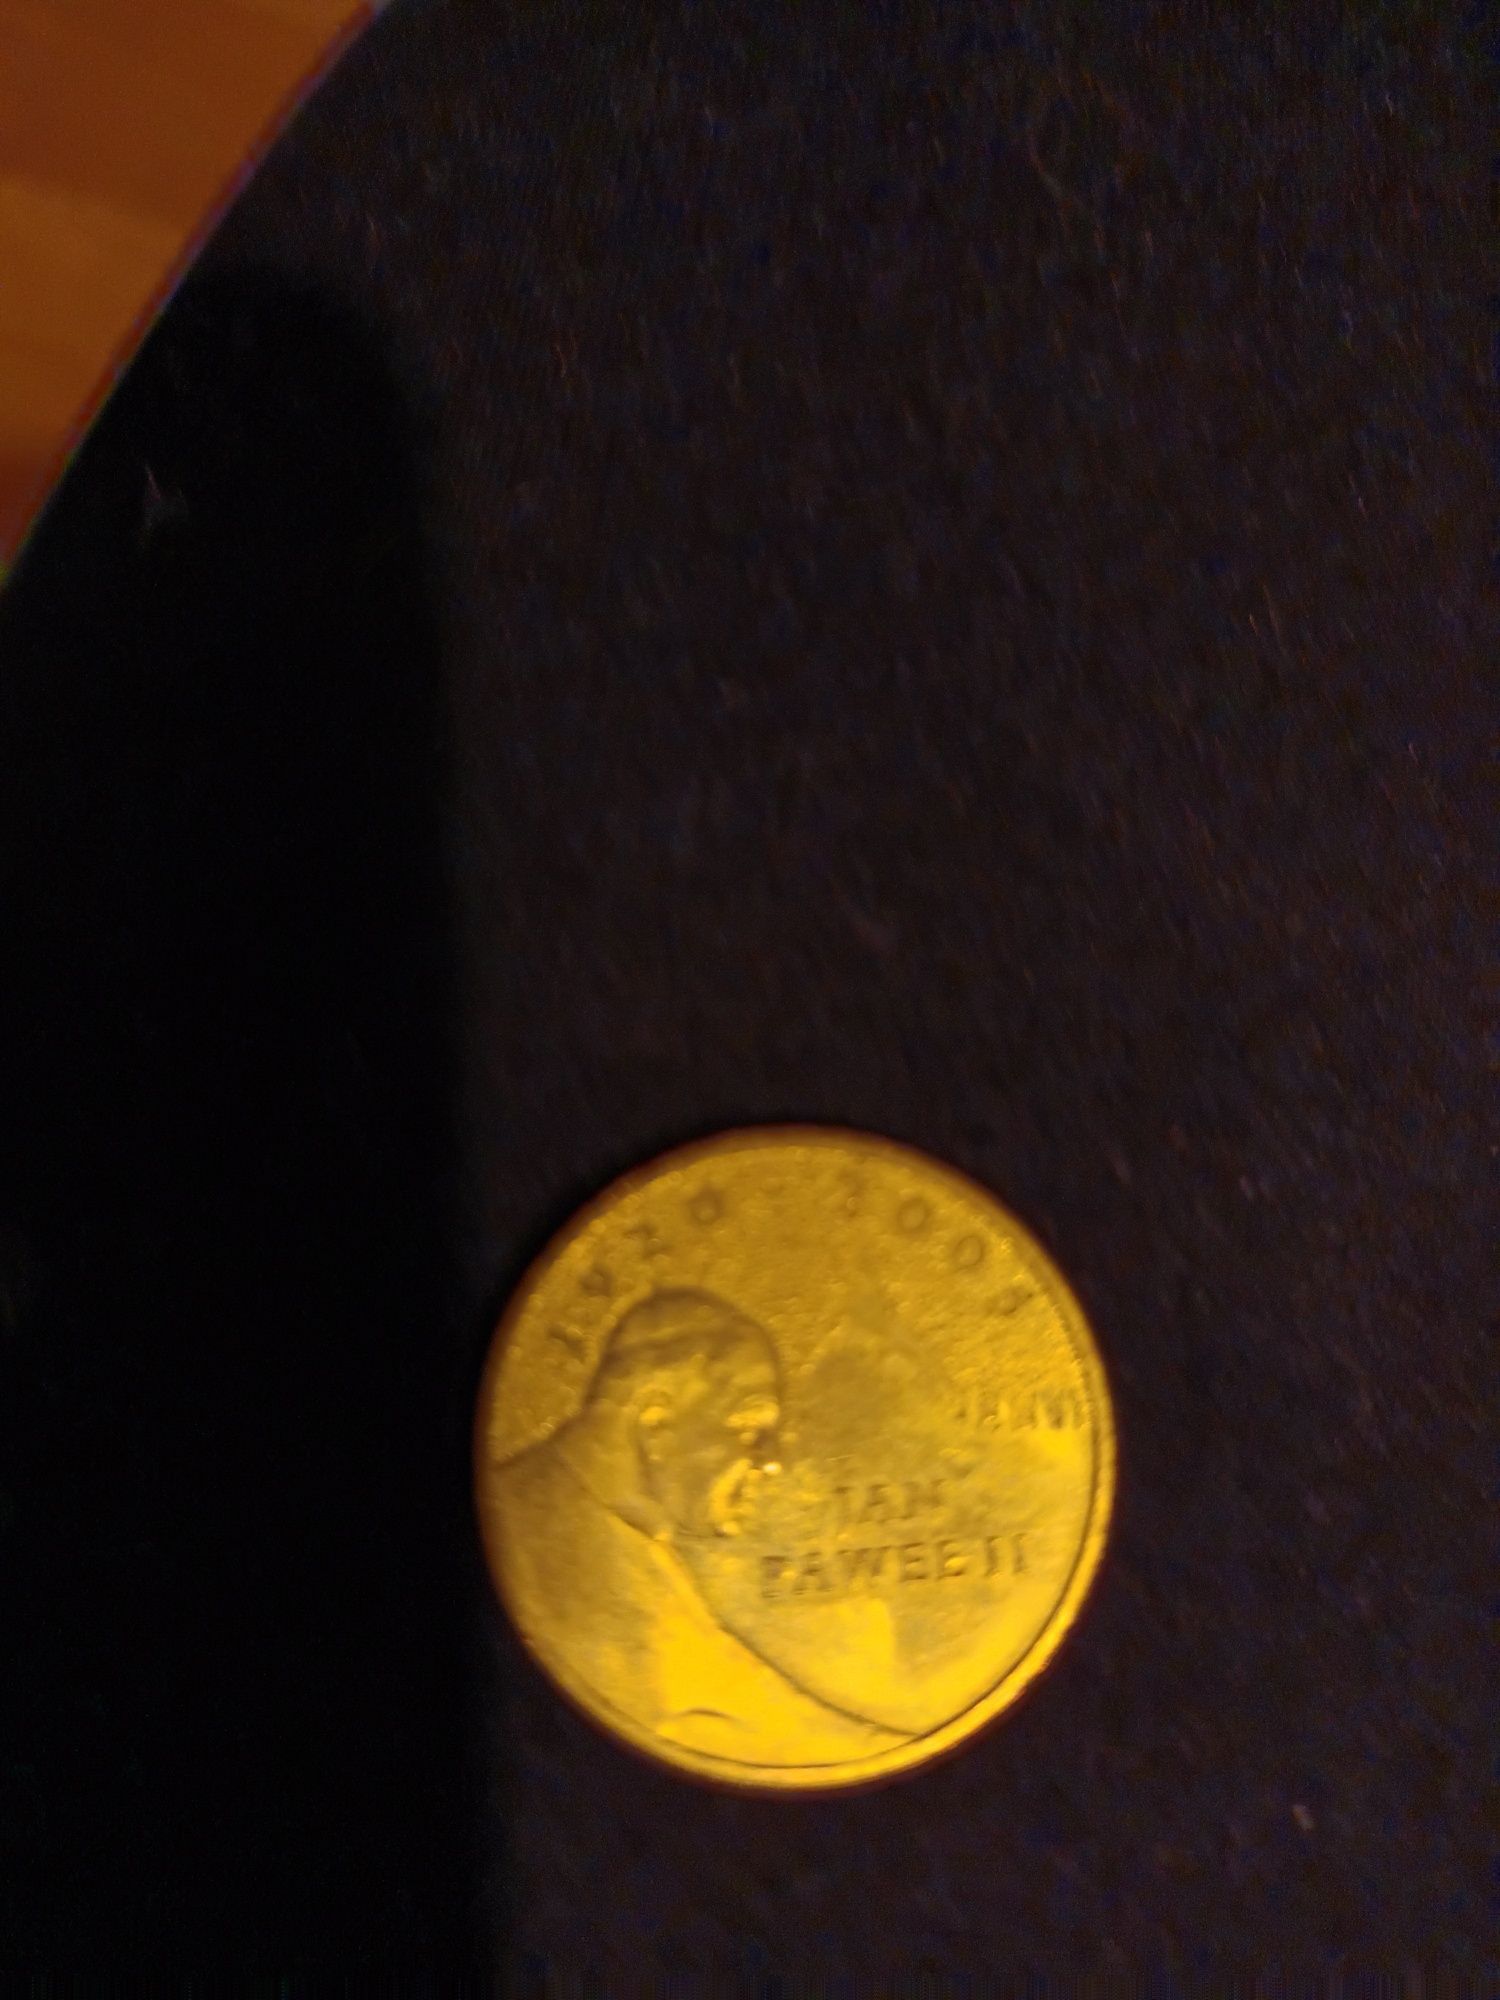 Dwa złote moneta wydana na upamiętnienie śmierci Papieża Jana Pawła ll